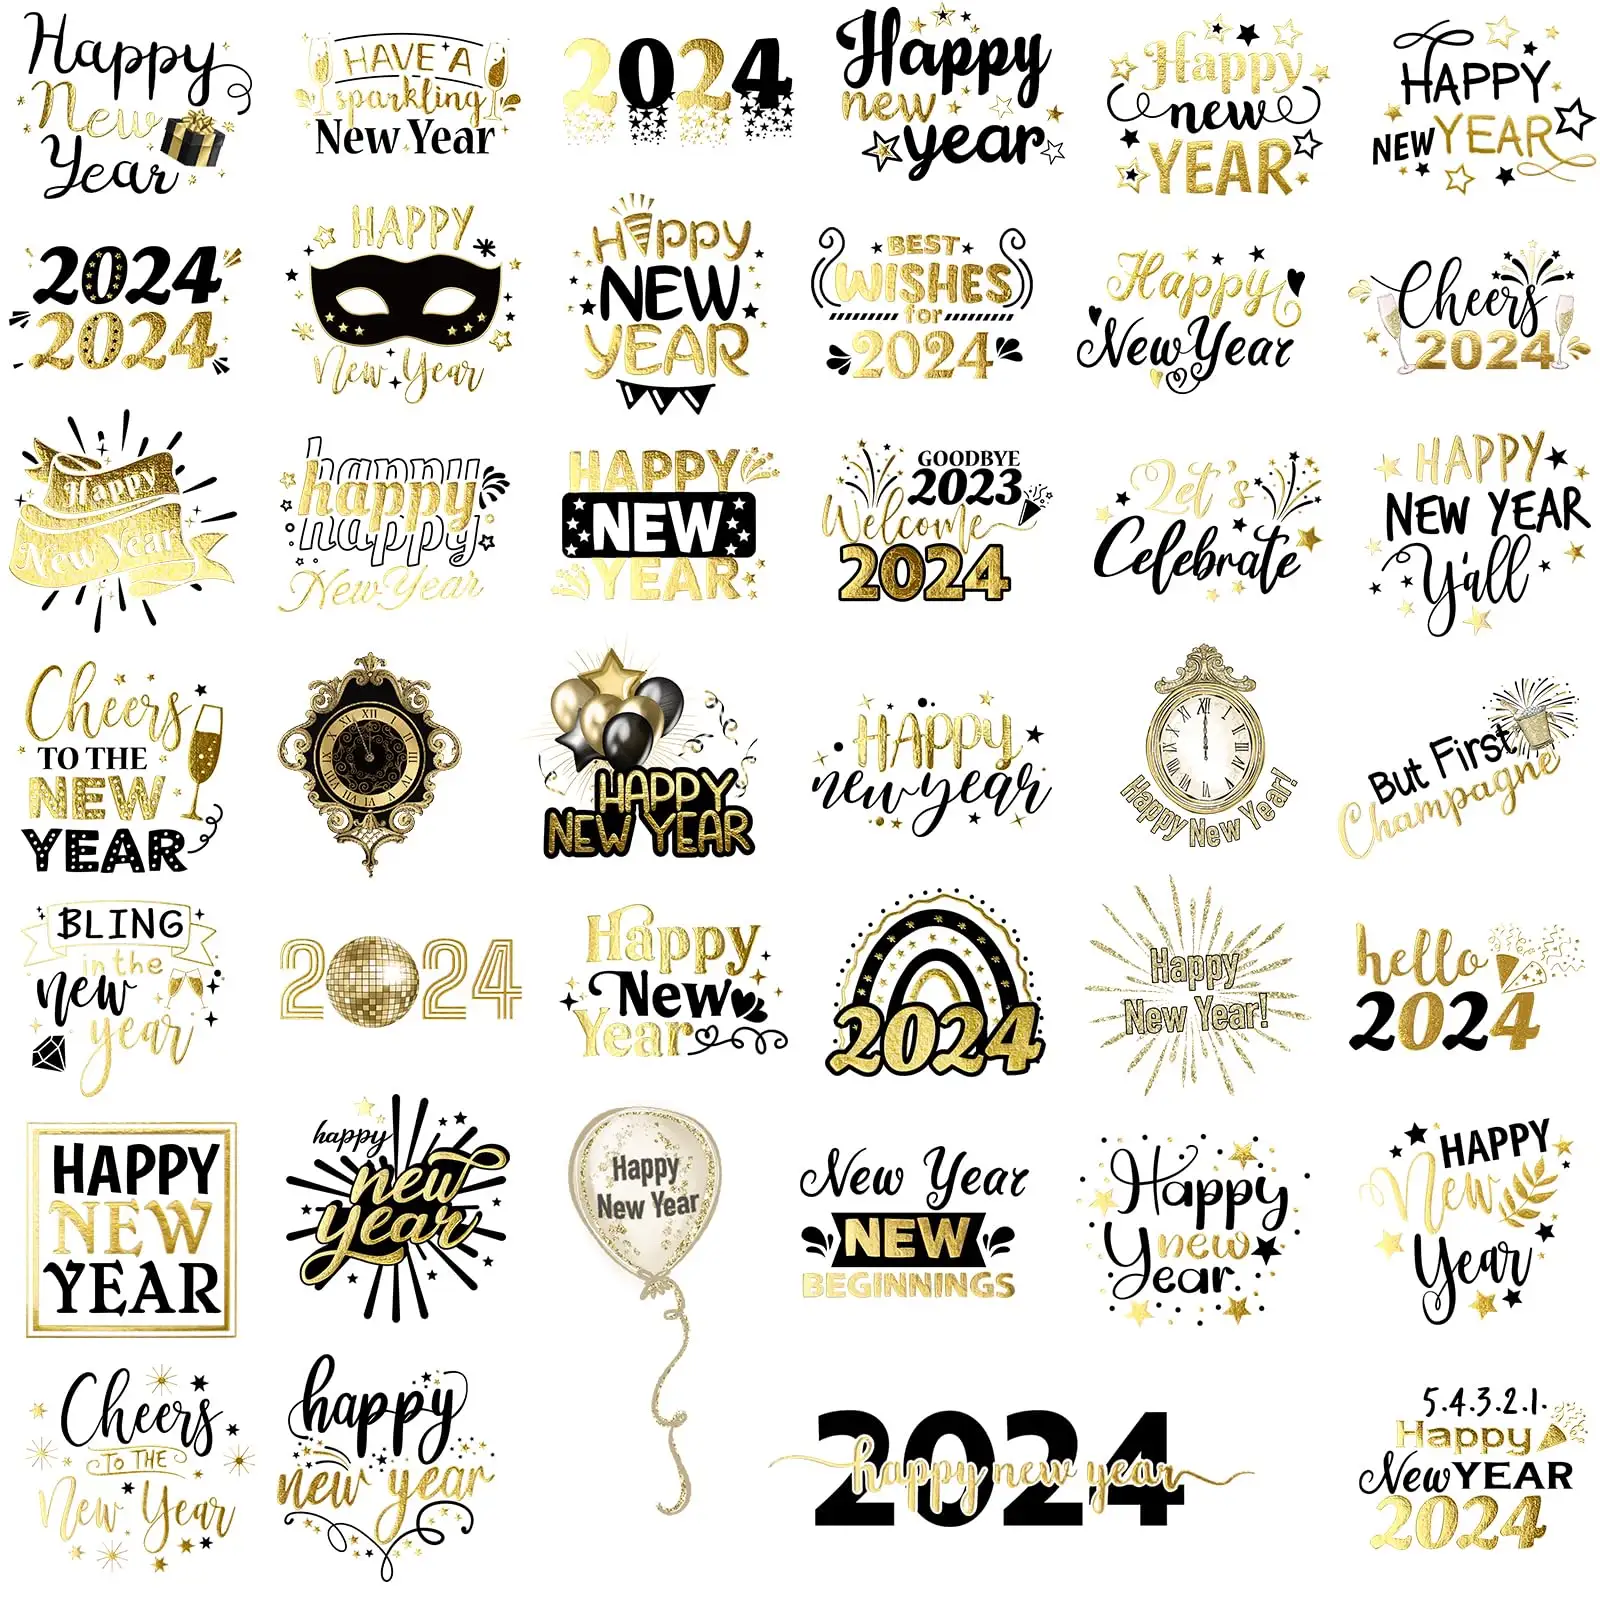 새해 문신 키트 200pcs 새해 복 많이 받으세요 파티 용품 방수 임시 문신 스티커